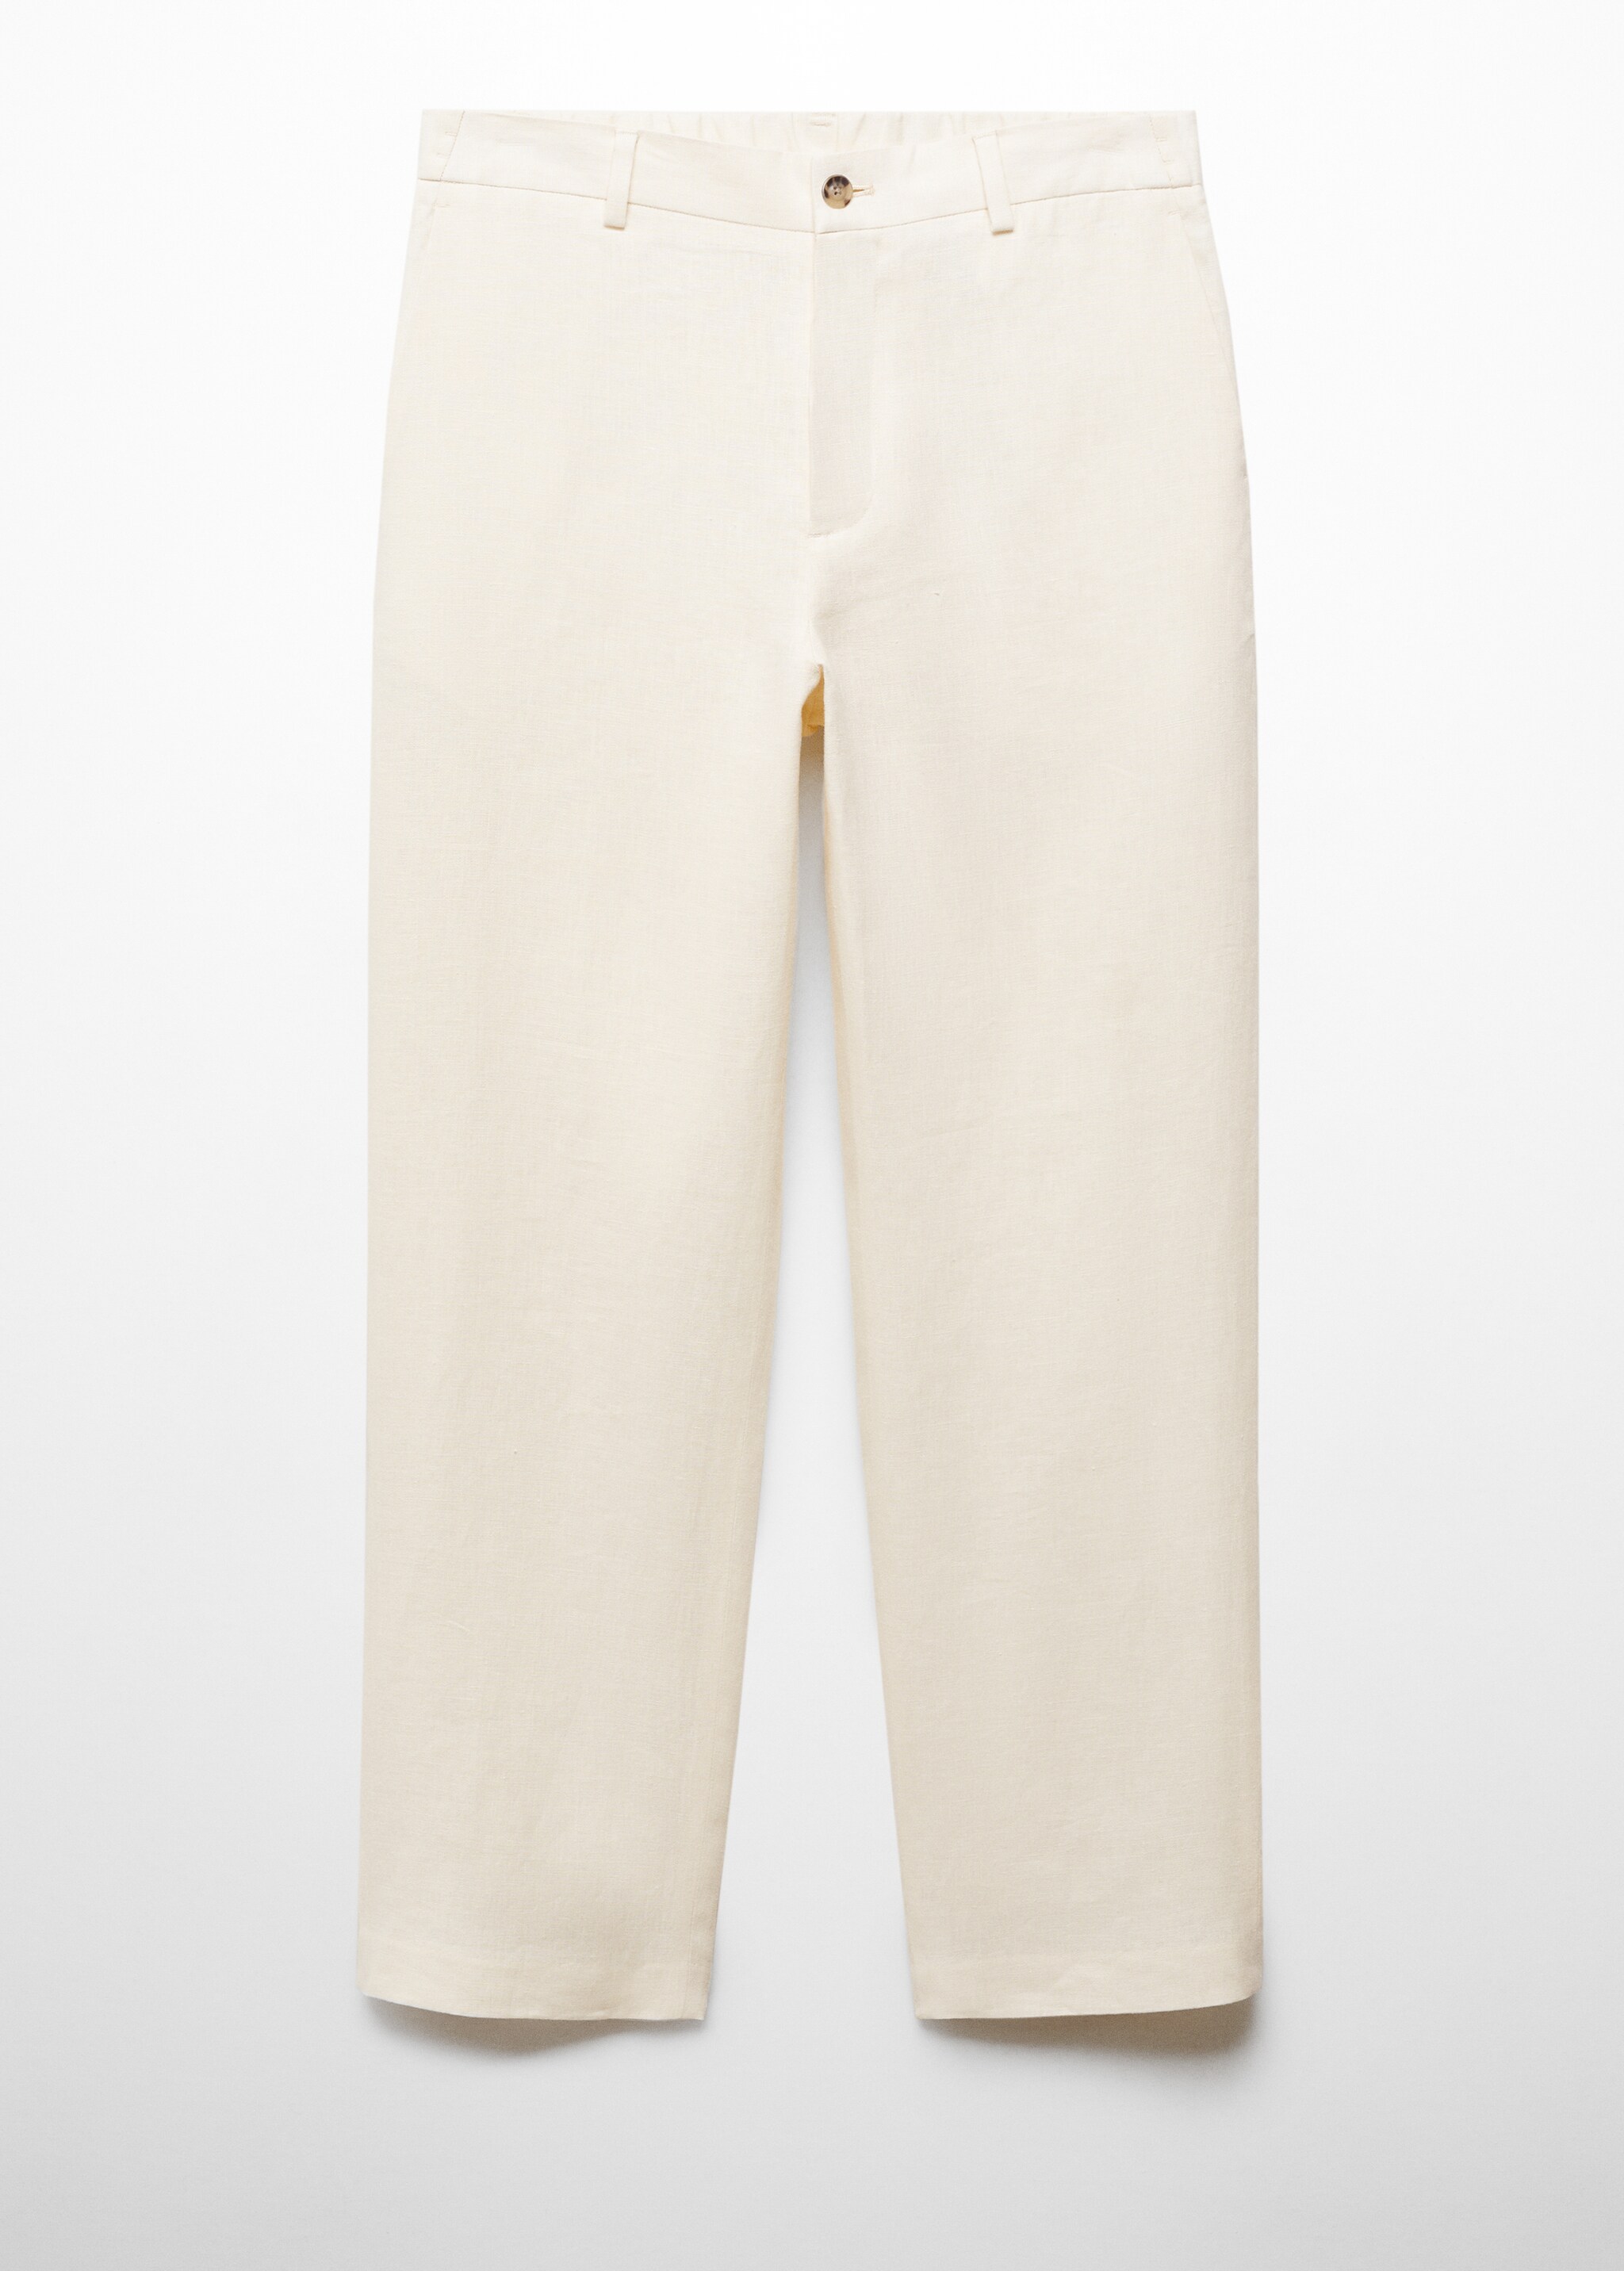 Pantalón 100% lino relaxed fit - Artículo sin modelo